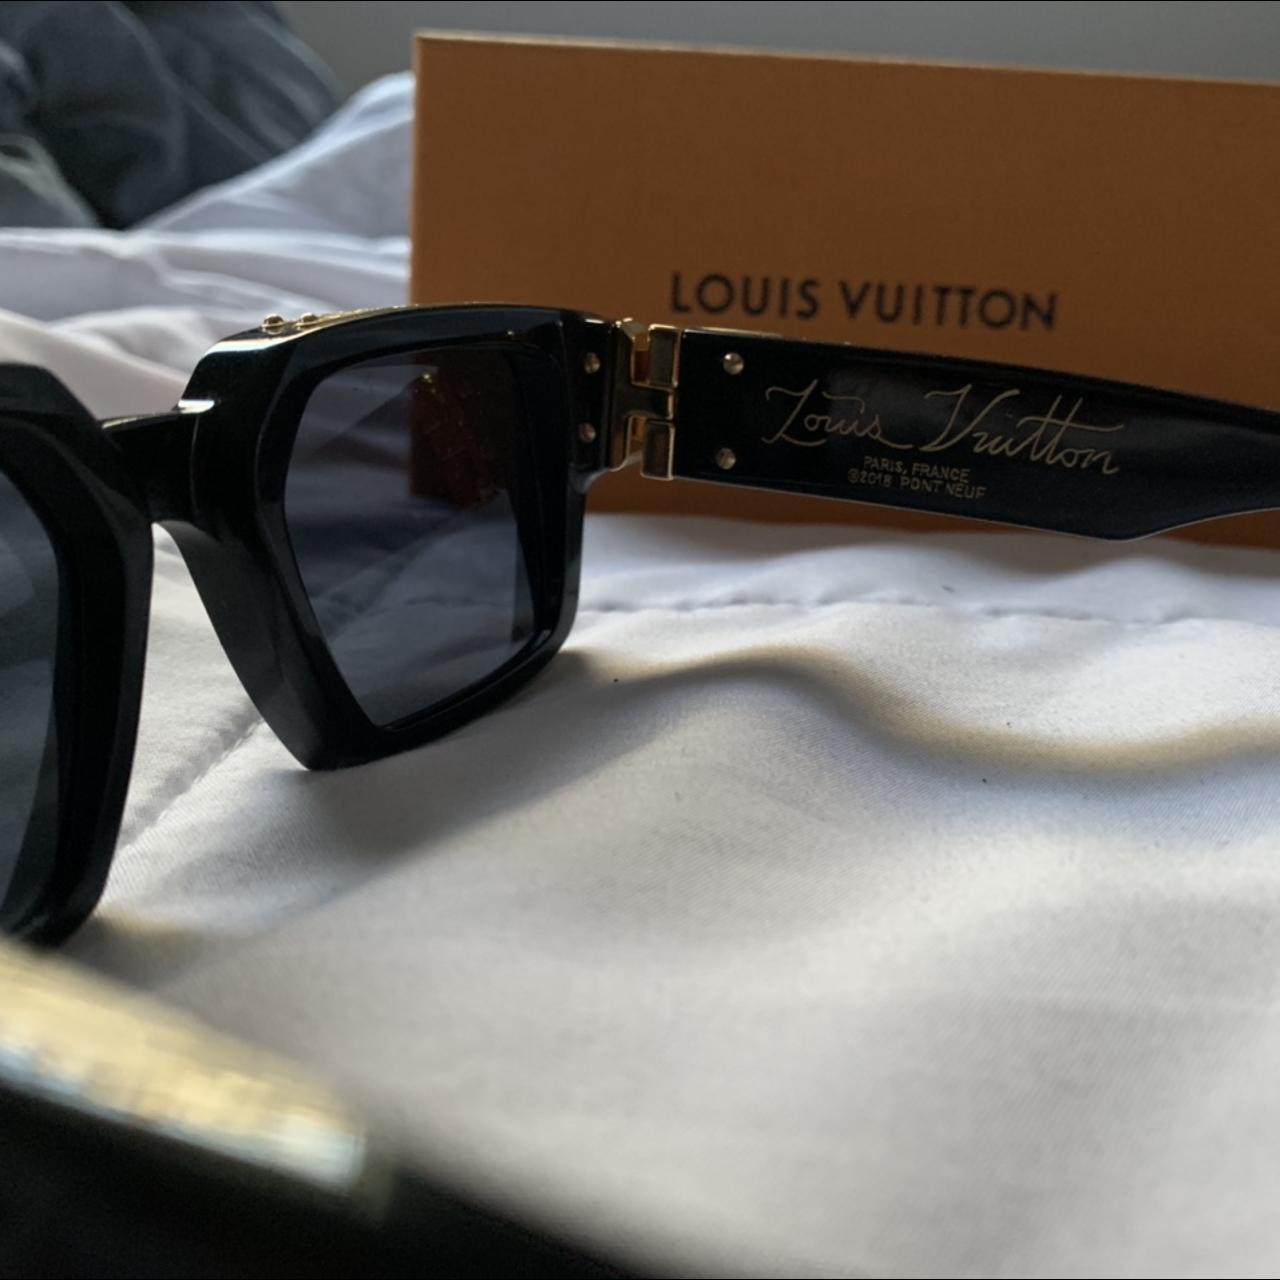 Louis Vuitton 1.1 Millionaires Sunglasses Green - Depop